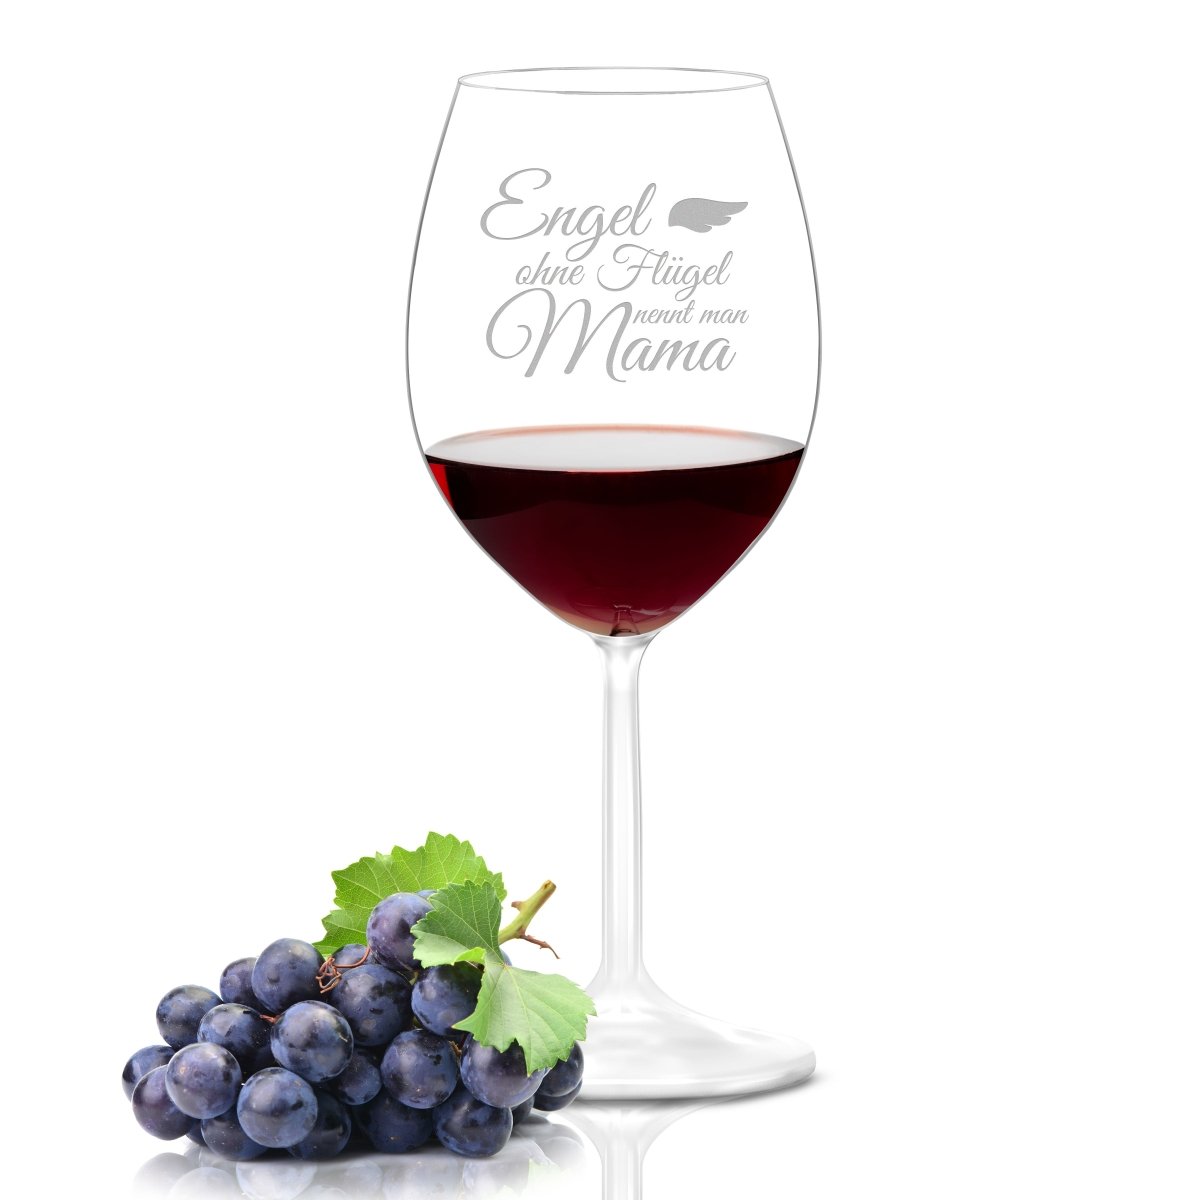 Weinglas mit Gravur | Engel ohne Flügel nennt man Mama  - Leonardo